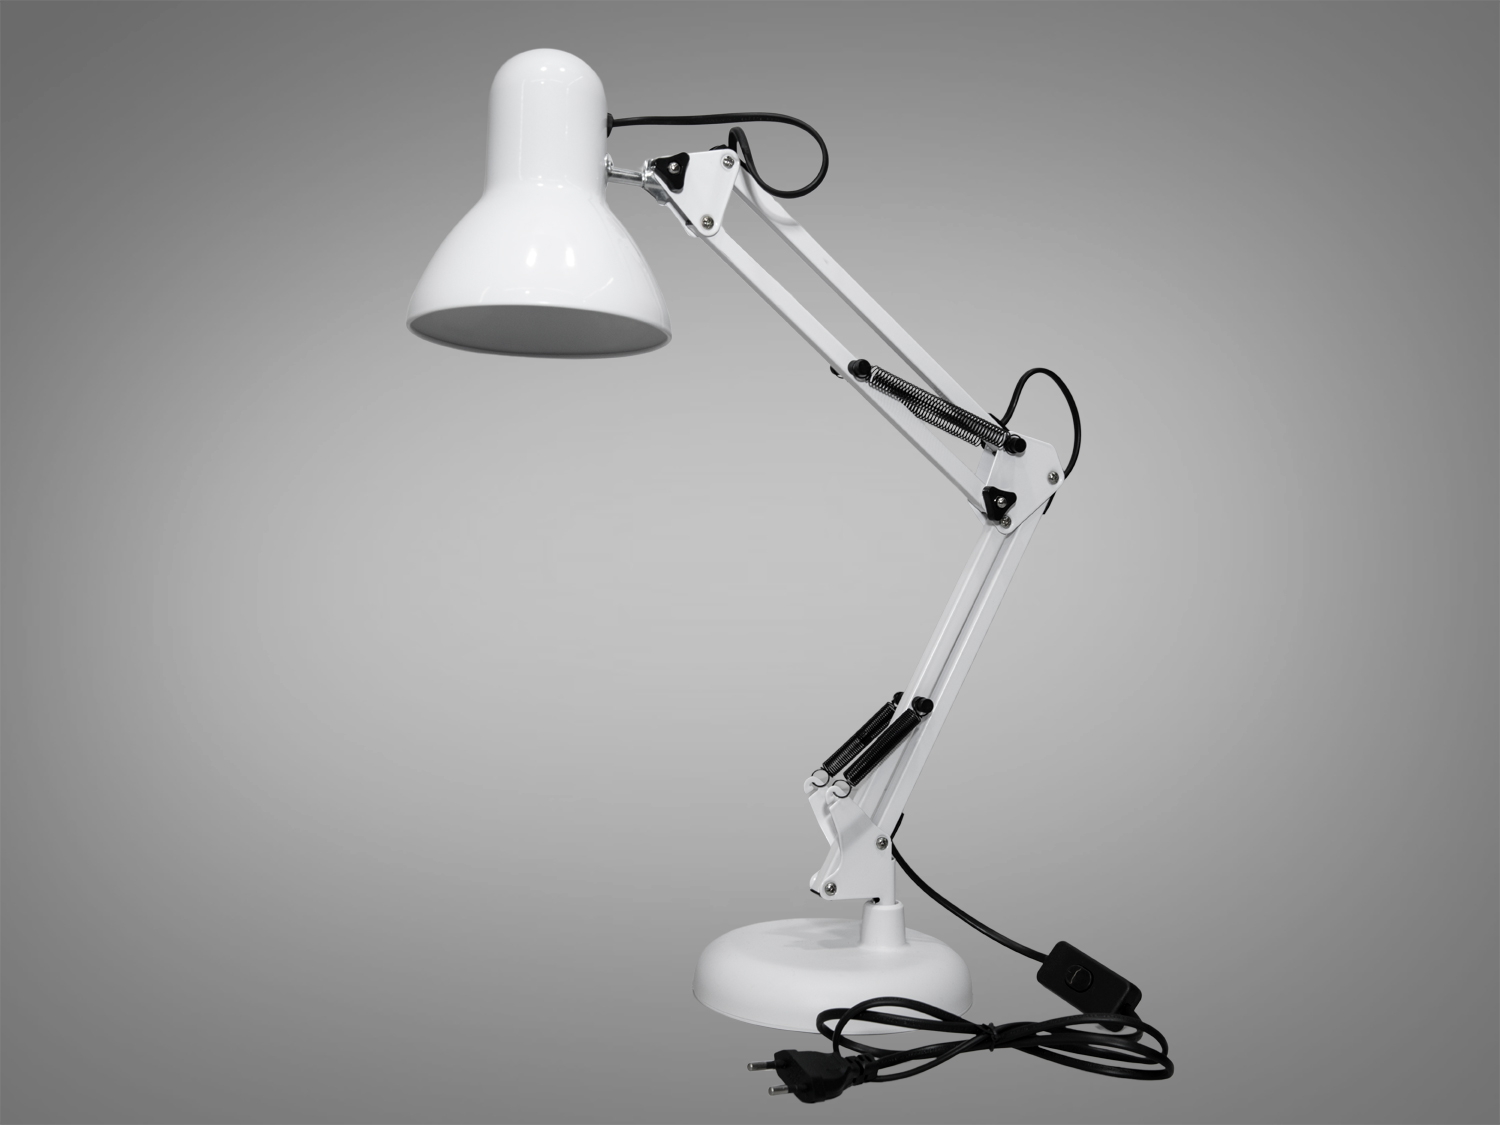 Ця настільна класична лампа для читання, виконана у класичному білому кольорі, дизайні офісних ламп, втілює в собі унікальність лампи, яка виходить за рамки її практичного призначення. Її витончені лінії та ретельно продумана конструкція роблять її не тільки корисним доповненням до робочого простору, але й стильним акцентом, який здатний підкреслити вишуканий смак власника. Лампа нагадує культовий дизайн знаменитого ролика кіностудії Pixar, що додає їй особливого шарму.
ТМ «Діаша» пропонує спеціальні ціни для оптових покупців, тому зателефонуйте нам, щоб купити світильники та люстри оптом за супер вигідною ціною.
Лампа в кабінет є виразом класики та елегантності, де кожен елемент, від міцної основи до гнучкого регульованого корпуса, розроблений з думкою про комфорт та естетику. Корпус лампи, обладнаний різноманітними шарнірами та пружинами, дозволяє легко налаштувати висоту та кут нахилу світла, забезпечуючи оптимальне освітлення для робочих задач.
Як настільна лампа в дитячу, цей світильник може стати вірним супутником у навчанні та іграх маленьких користувачів. Його м'яке, але досить яскраве світло, що виходить з лампи Е27, створює ідеальні умови для читання книг або виконання домашніх завдань, при цьому не створюючи надмірного напруження для дитячих очей.
Для тих, хто шукає доступні, але якісні освітлювальні рішення, ця лампа пропонує можливість купити настільну лампу дешево, не поступаючись в якості. Пропонована ТМ «Діаша», вона стане цінним придбанням для кожного, хто вважає за краще функціональність поєднану з дизайнерськими рішеннями.
Як настільна лампа на робочий стіл, цей світильник забезпечує не лише ефективність, а й додає елемент особистого стилю до робочого місця. Його лаконічний дизайн та висока мобільність дозволяють вільно маневрувати світлом, адаптуючи його для будь-яких потреб.
Використання патрона Е27 забезпечує легкість у виборі та заміні лампочок, роблячи цю настільну лампу не тільки стильним, але й практичним вибором для освітлення.
Таким чином, ця настільна лампа не просто освітлює простір, але й вносить в нього відчуття спокою, зосередженості та індивідуальності. Вона створює атмосферу, в якій легко знайти натхнення для творчості та праці, водночас будучи вишуканим доповненням до будь-якого інтер'єру.